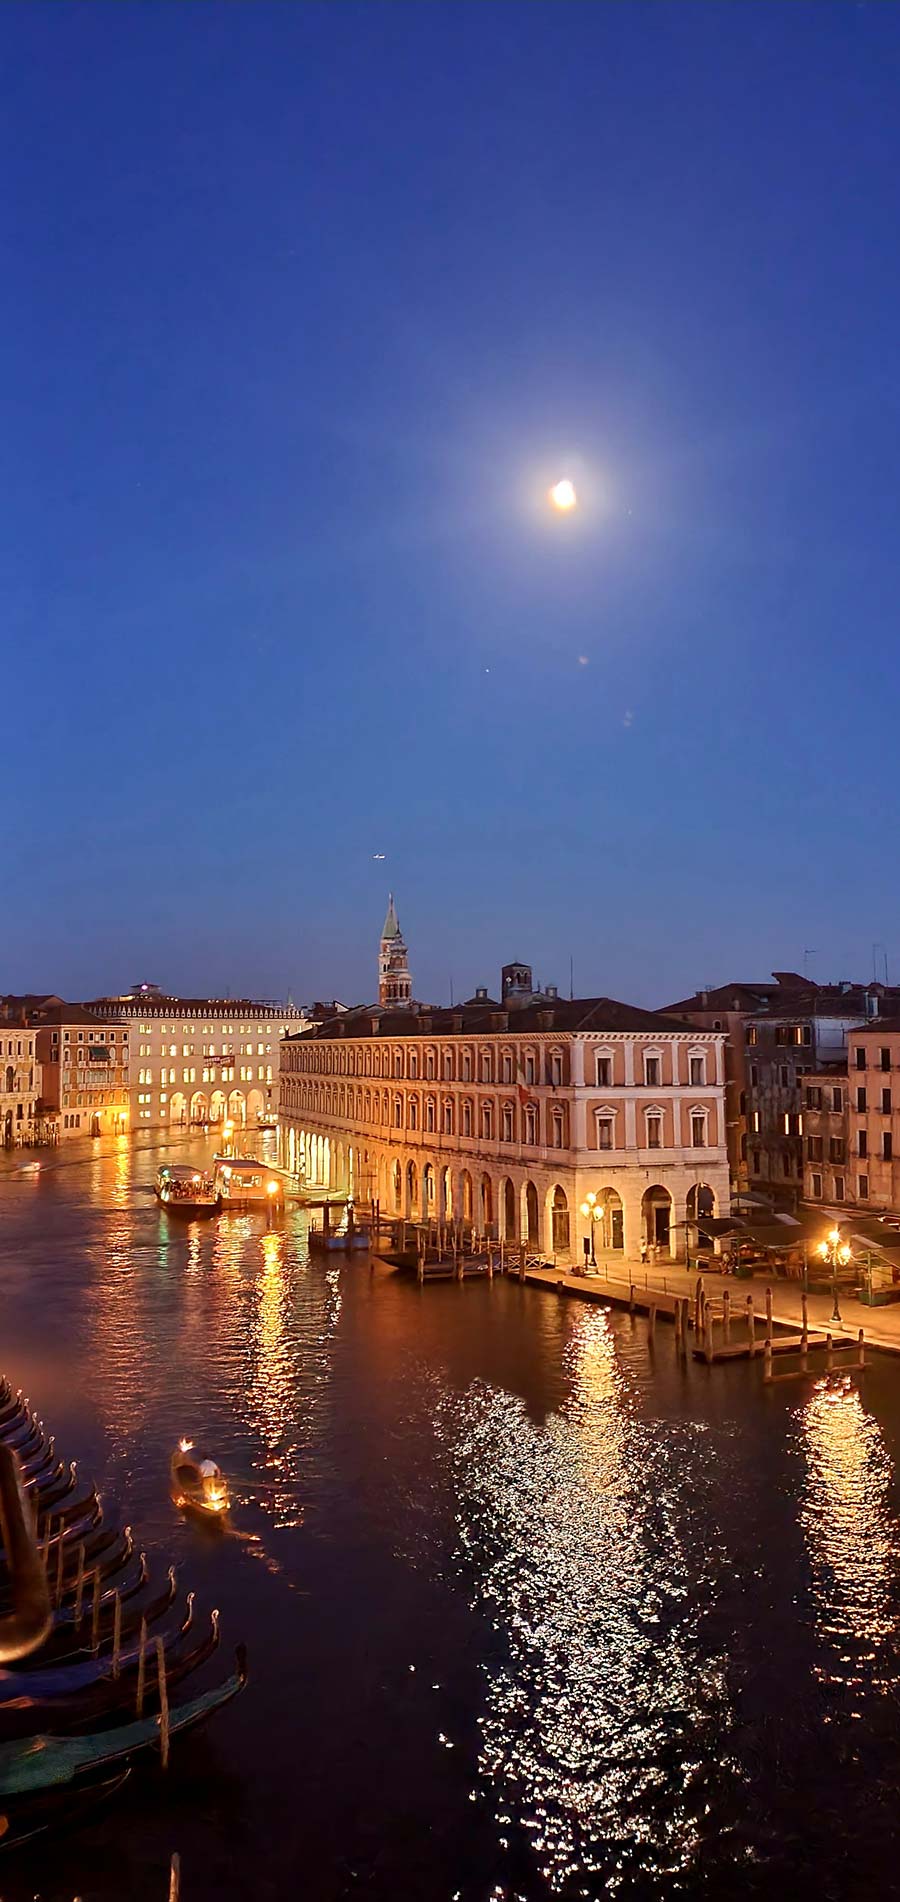 Venetian Palace - Ca’ Sagredo Hotel Grand Canal Venice Italy (7)